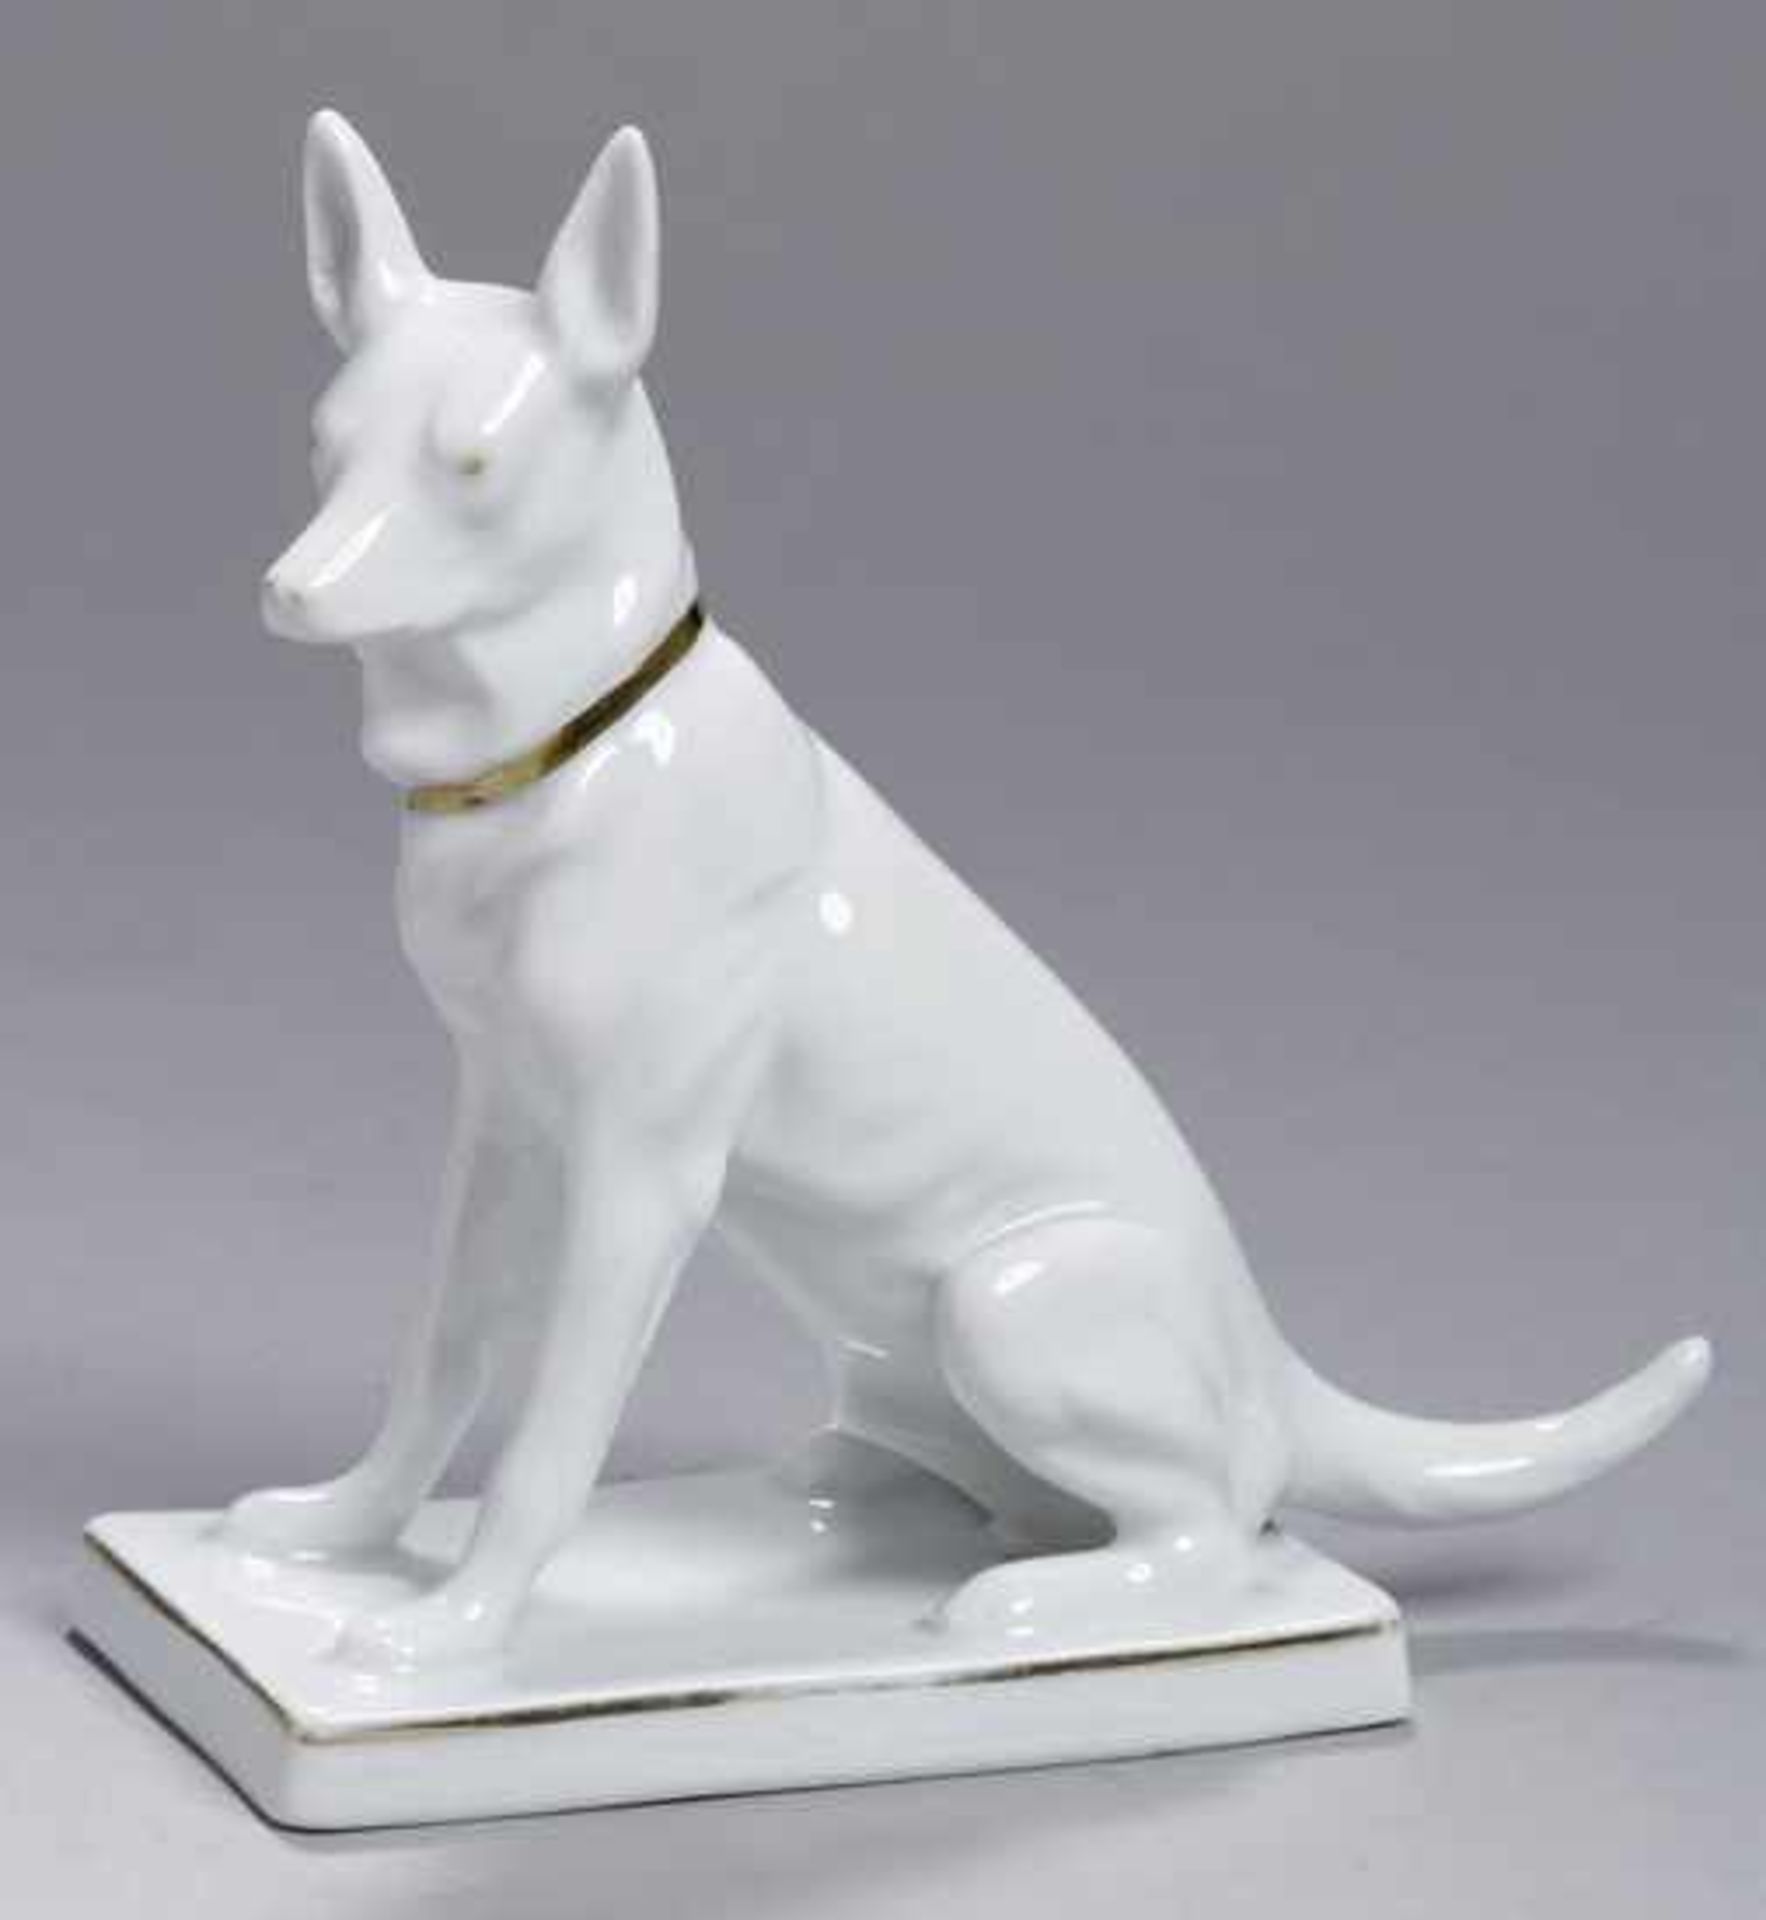 Porzellan-Tierplastik, "Hund", Neue Porzellanfabrik Tettau, um 1927-37, Mod.nr.: 12575/IV,